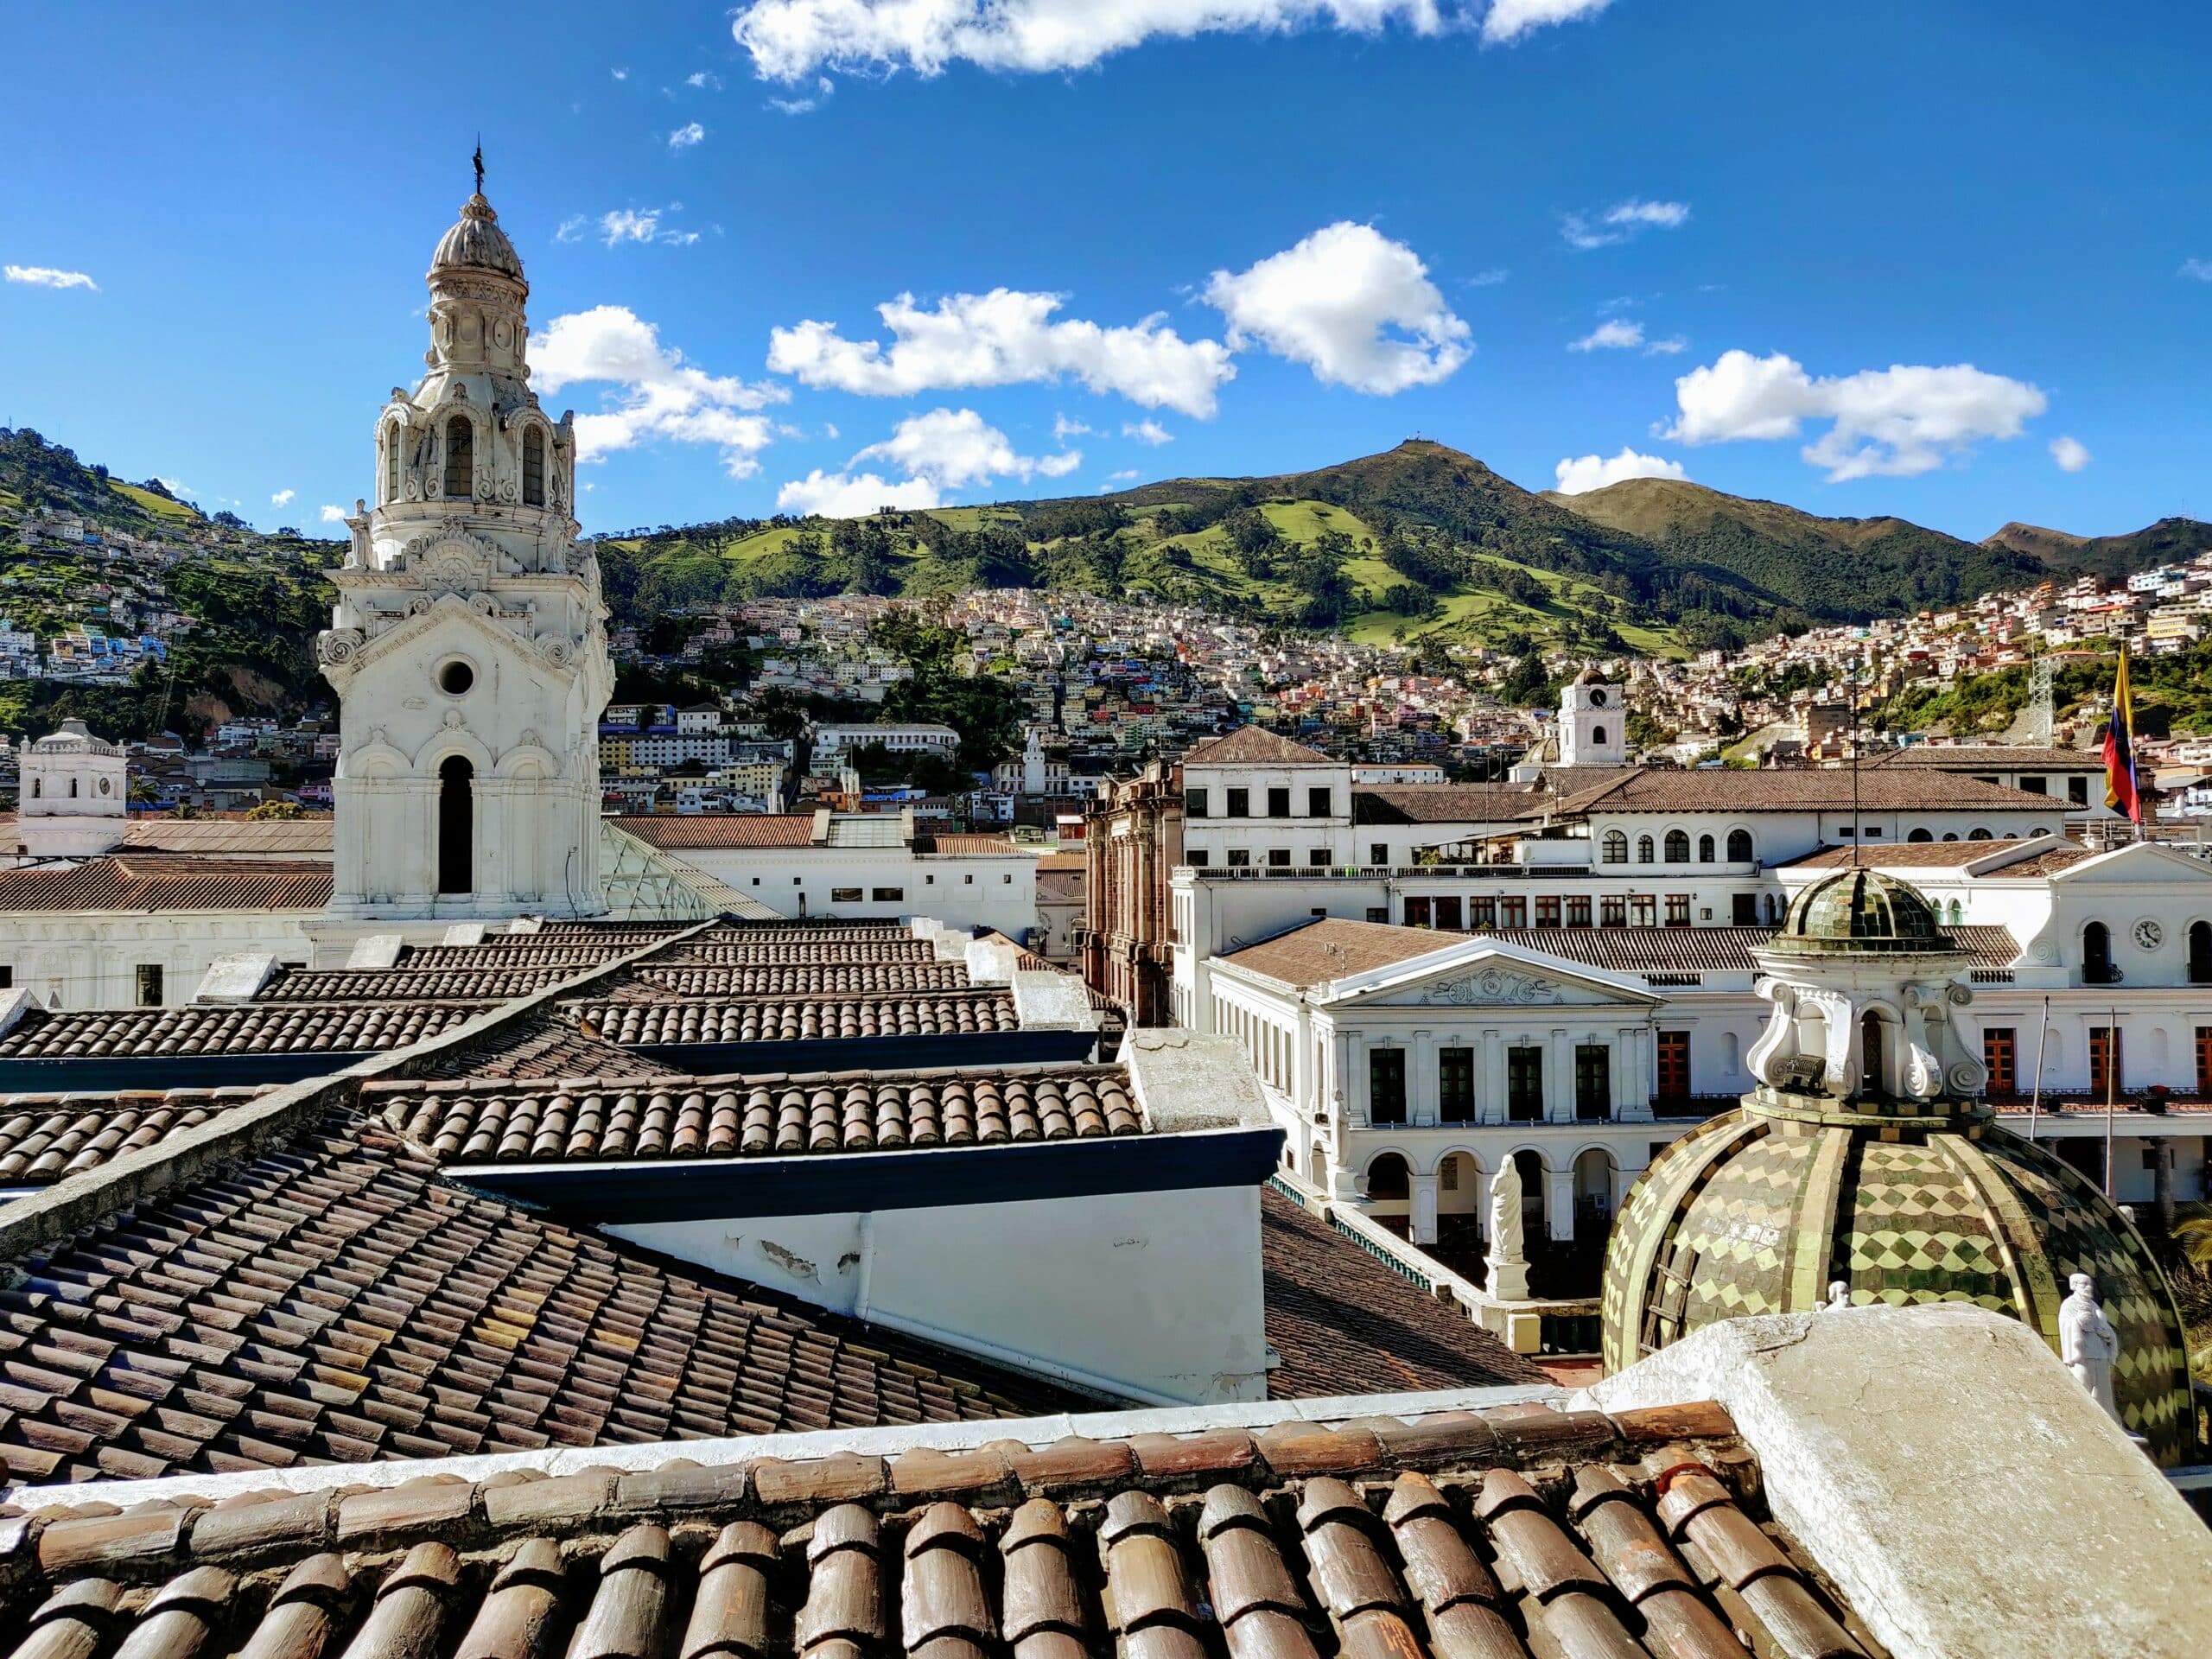 Vista da cidade de Quito, Equador com várias casas, igreja, ao fundo montanhas verdes com céu claro.